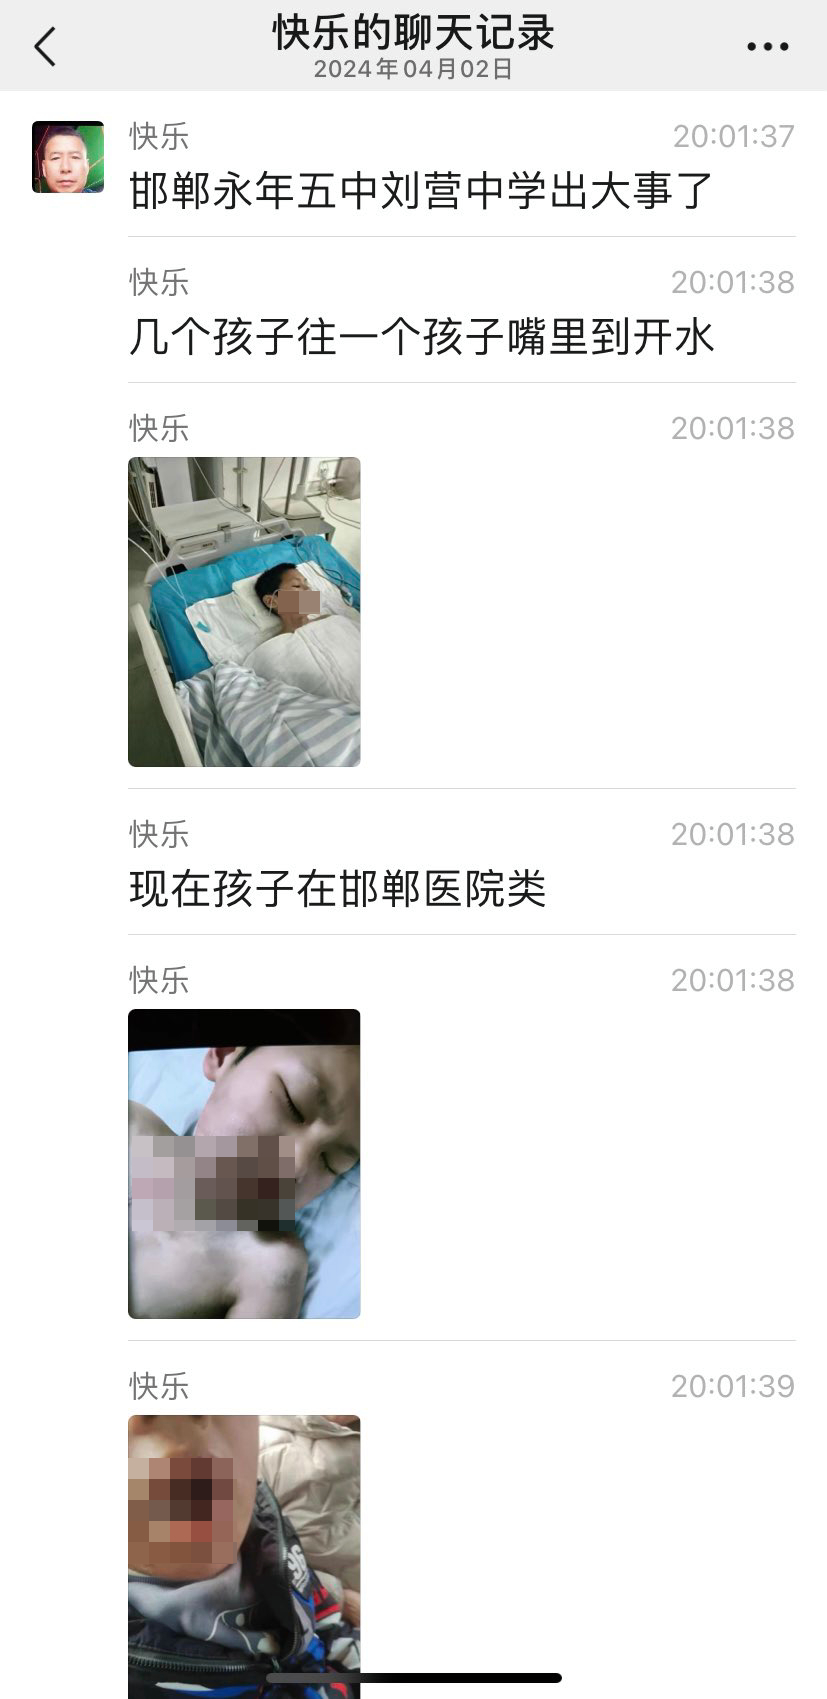 网民上传聊天截图，将邯郸初中生被人灌滚水受伤事件曝光。